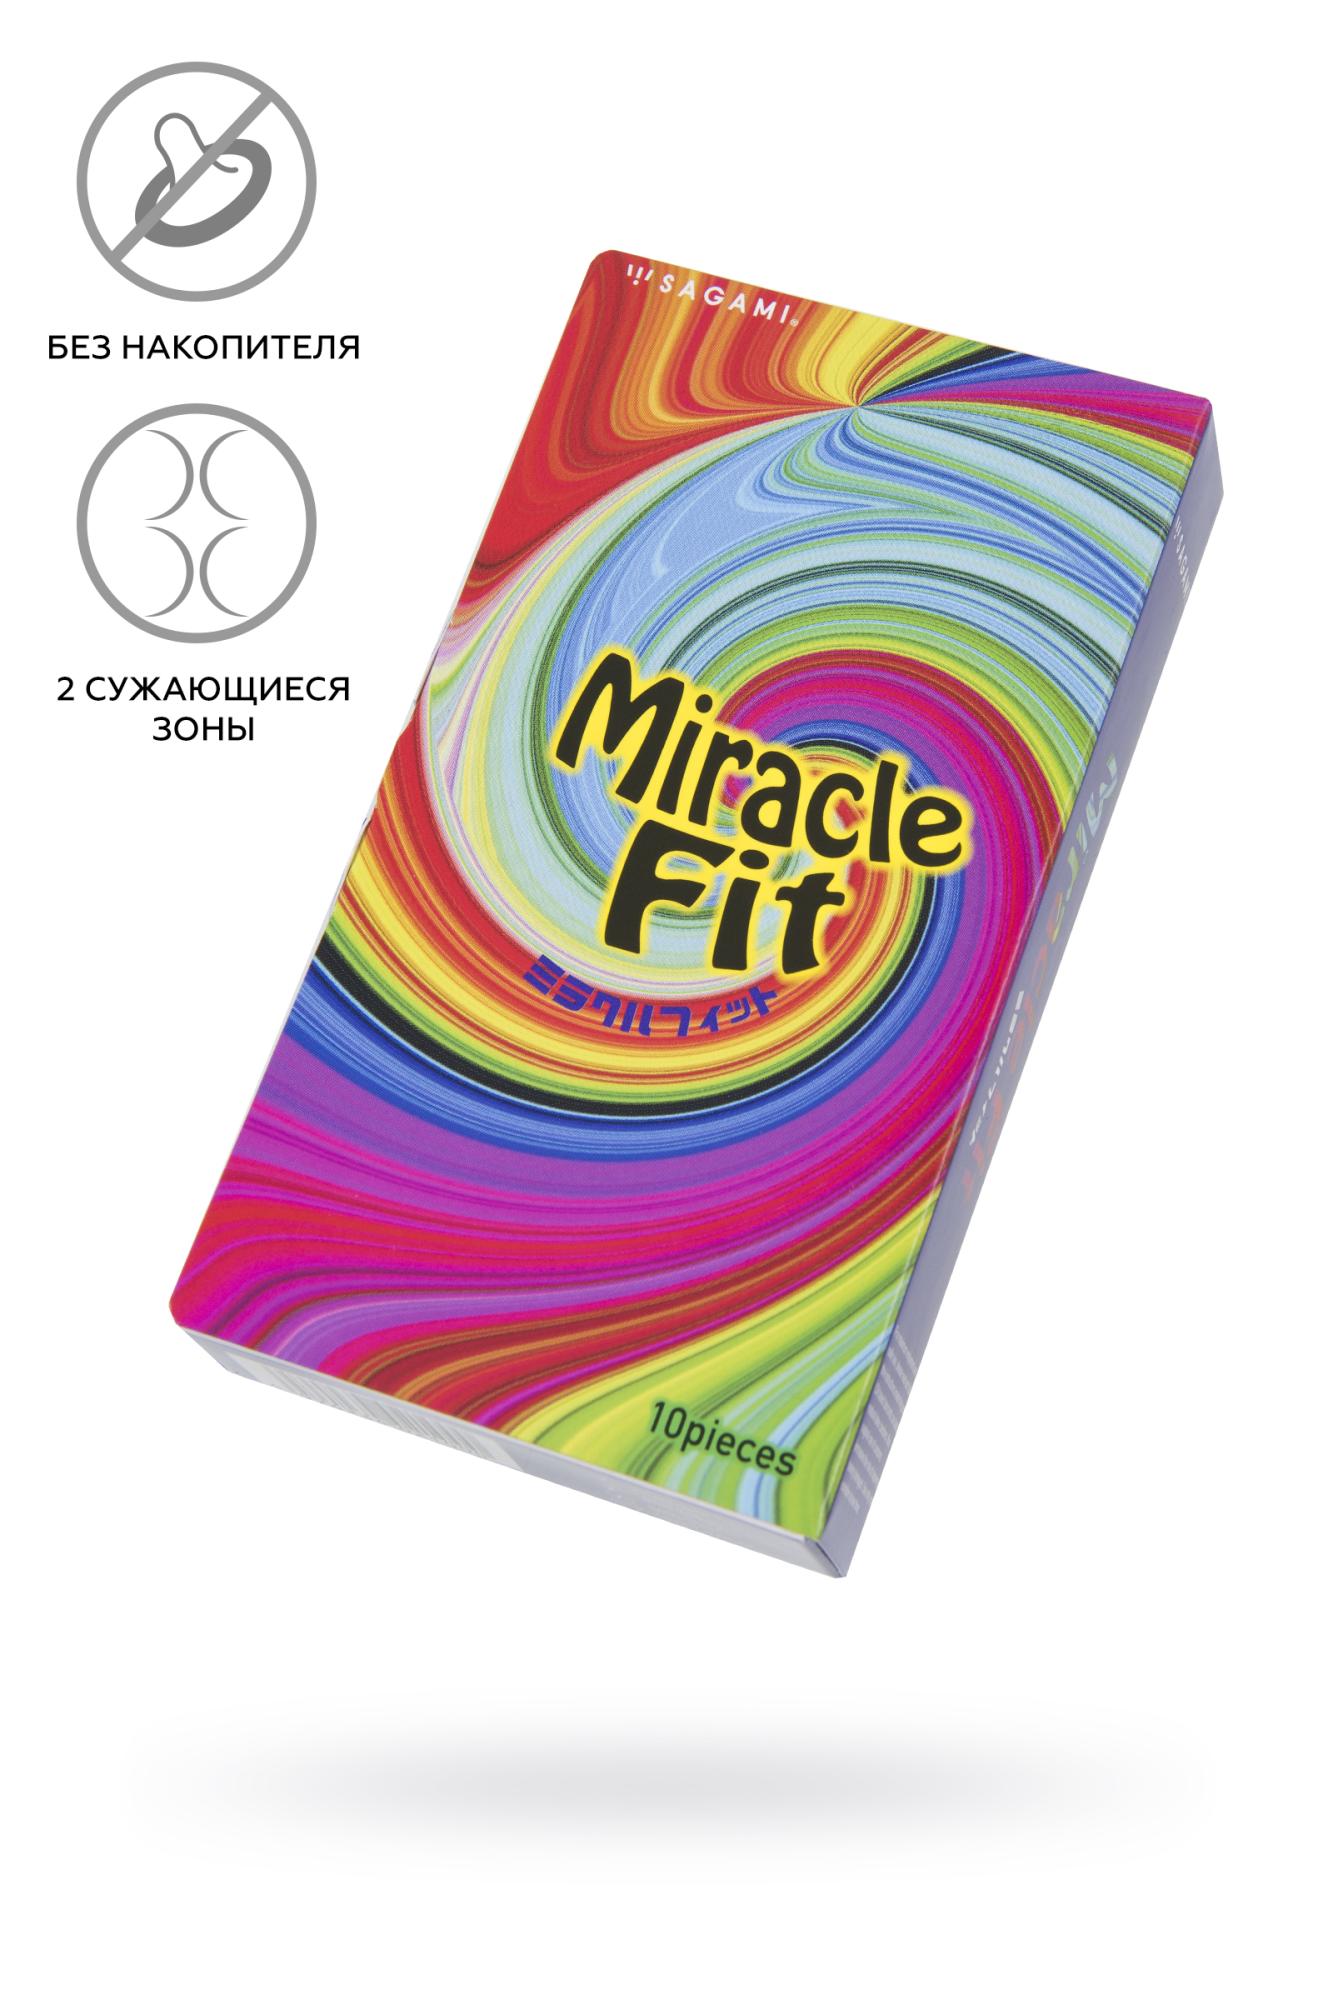 Sagami miracle fit - Презервативы, 18,5 см, 10 шт (розовый)